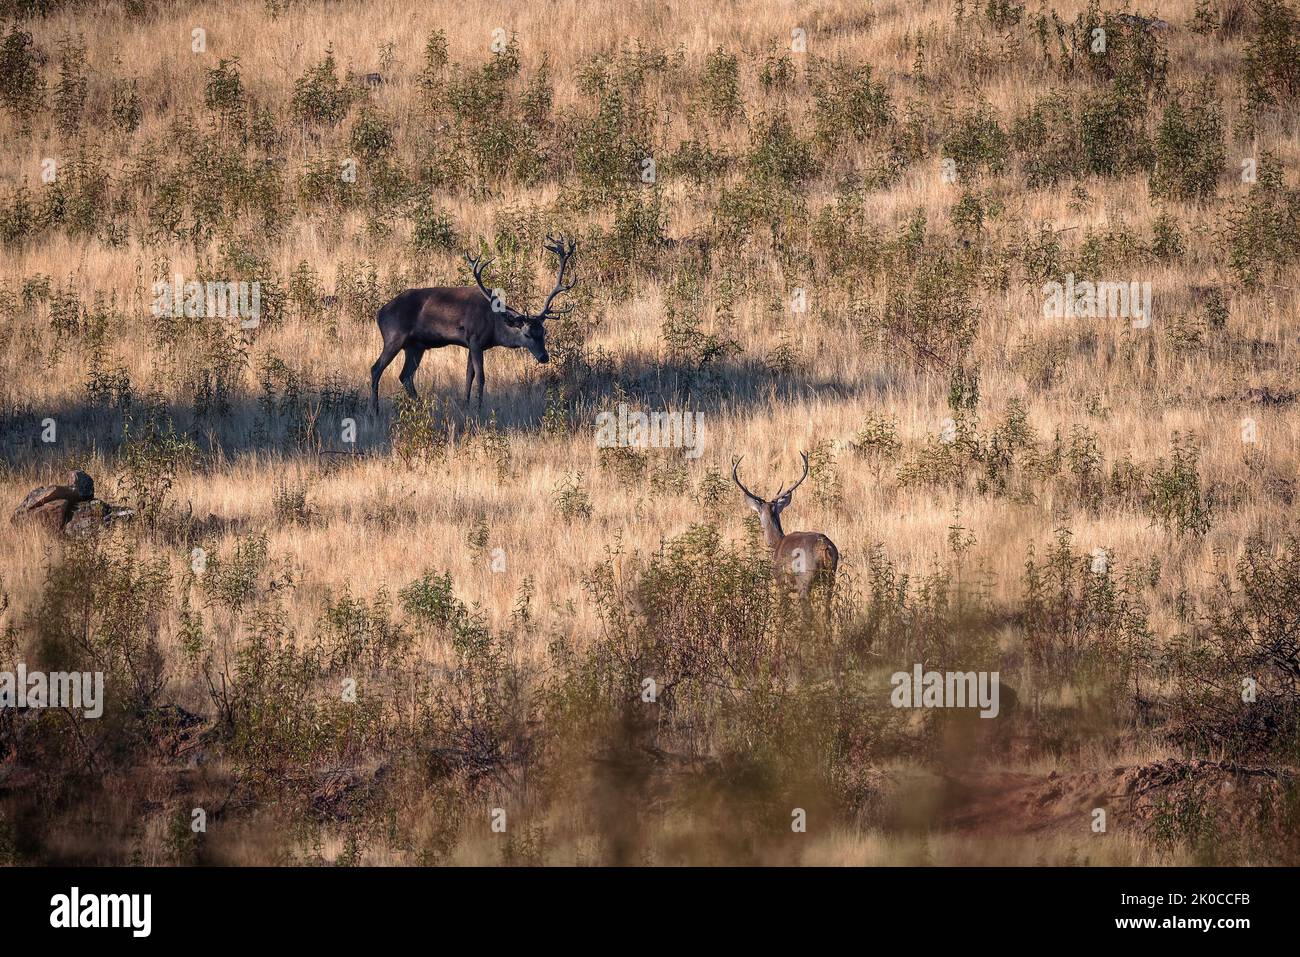 Dos ciervos en su entorno natural. Foto de stock